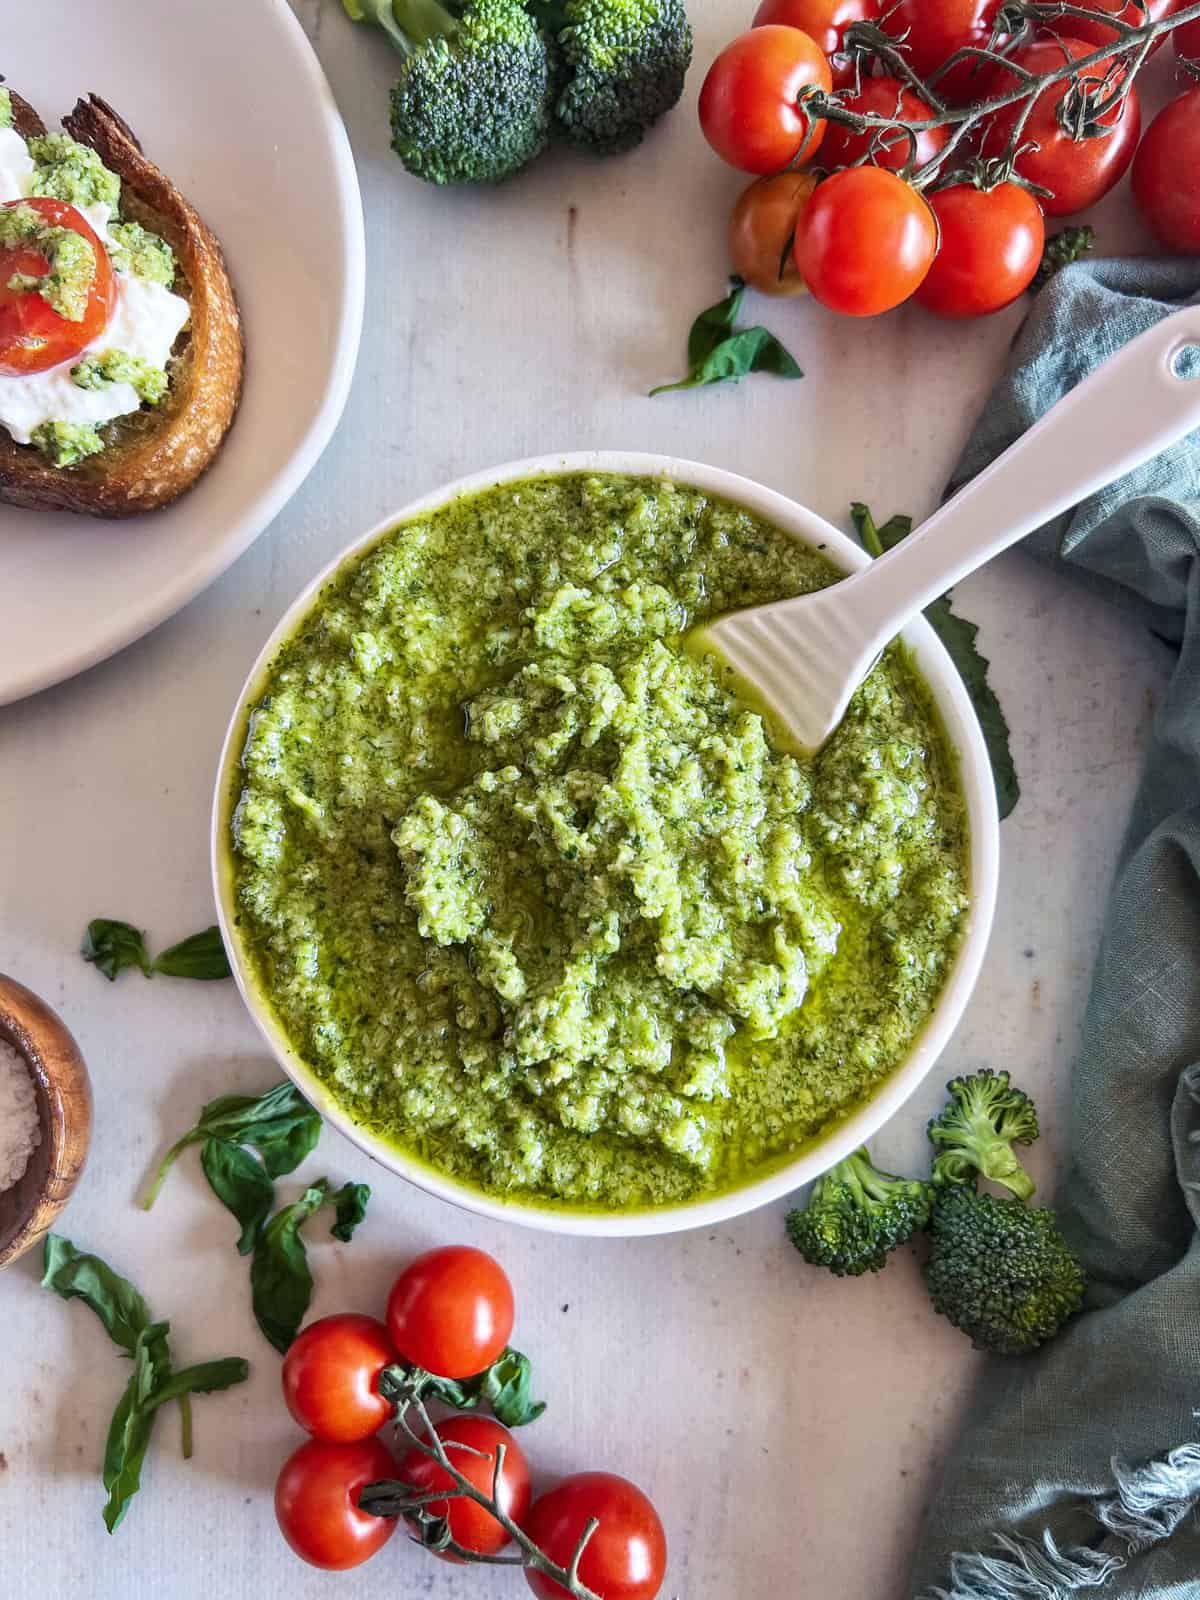 Broccoli Pesto – From Jessica of Big Delicious Life